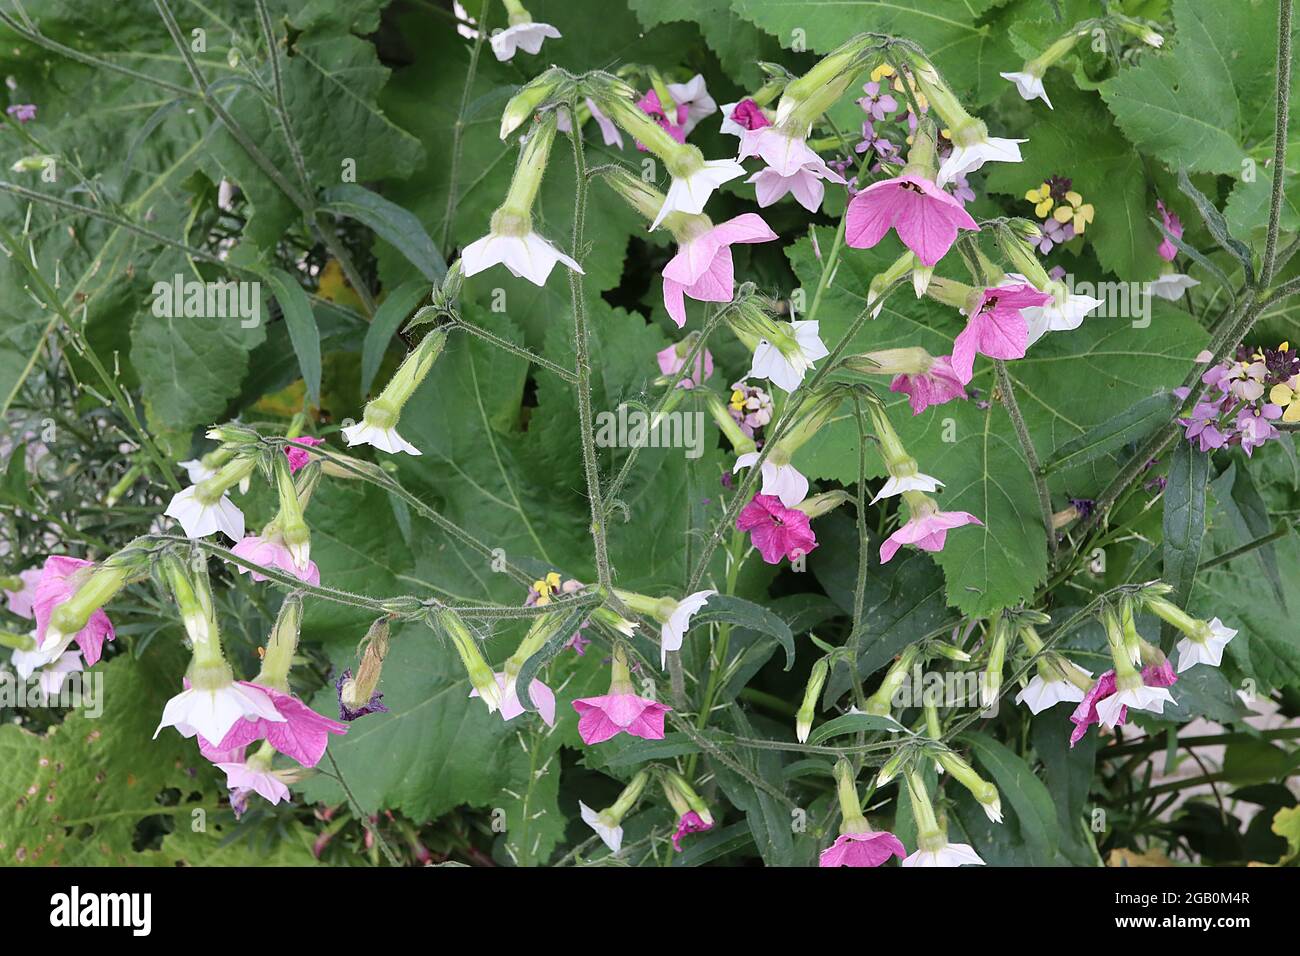 Nicotiana alata ‘Whisper Mixed’ Tabakpflanze Whisper Mixed - duftende weiße, blasse und mittelrosa Blüten, Juni, England, Großbritannien Stockfoto